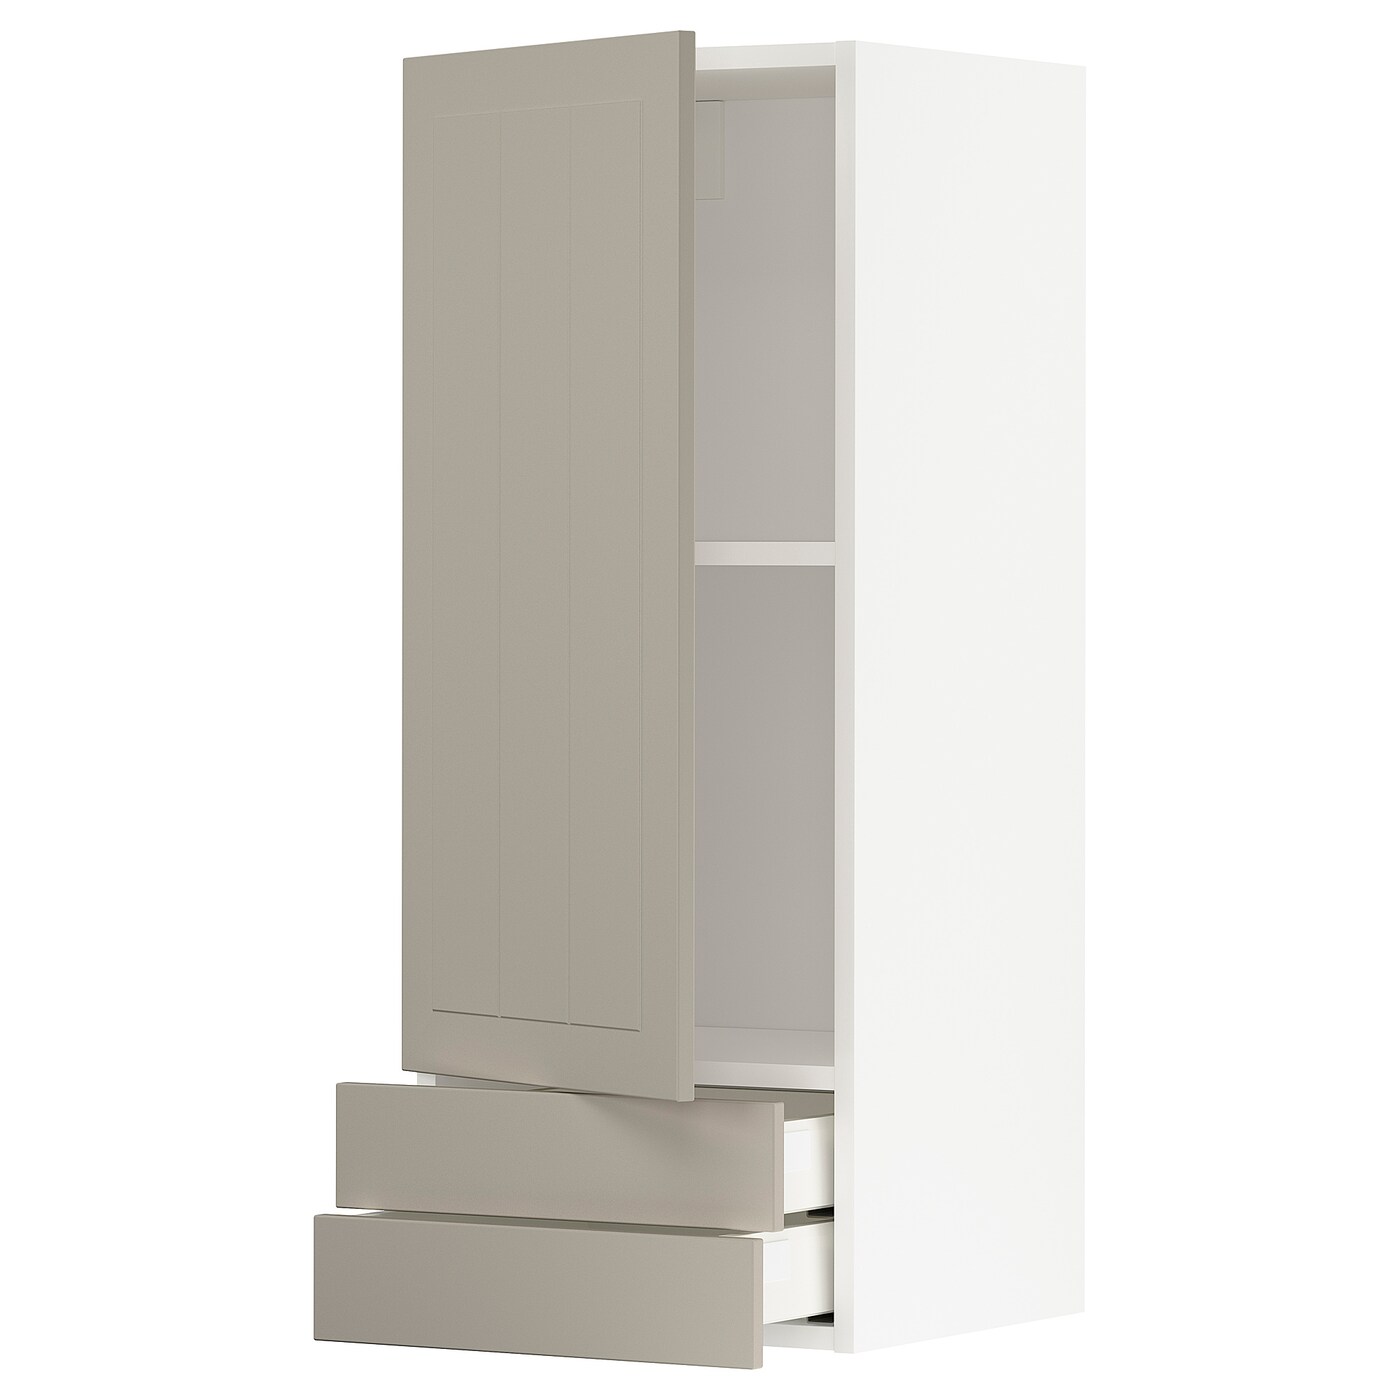 Навесной шкаф с полкой - METOD/MAXIMERA  IKEA/ МЕТОД /МАКСИМЕРА ИКЕА, 100х40 см, белый/светло-коричневый